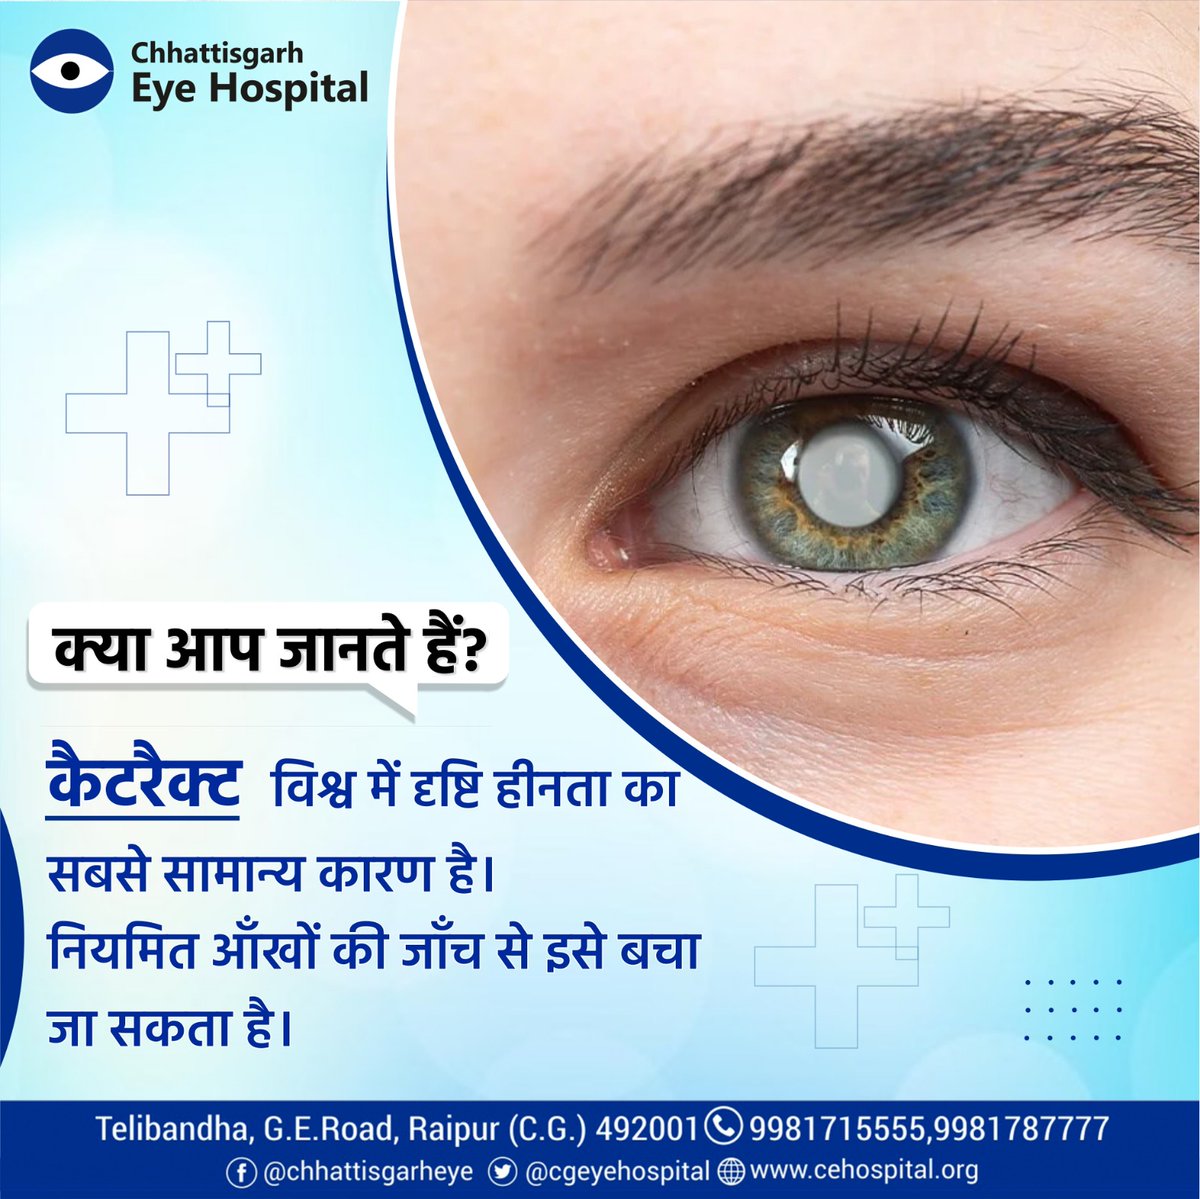 दुनियाभर में लाखों लोगों को मोतियाबिंद के कारण देखने में परेशानी होती है। ये आँखों के अंदरूनी लेंस को धुंधला कर देता है, जिससे चीज़ें साफ़ दिखाई नहीं देतीं। लेकिन घबराने की बात नहीं है
#eyehospital #eyecare